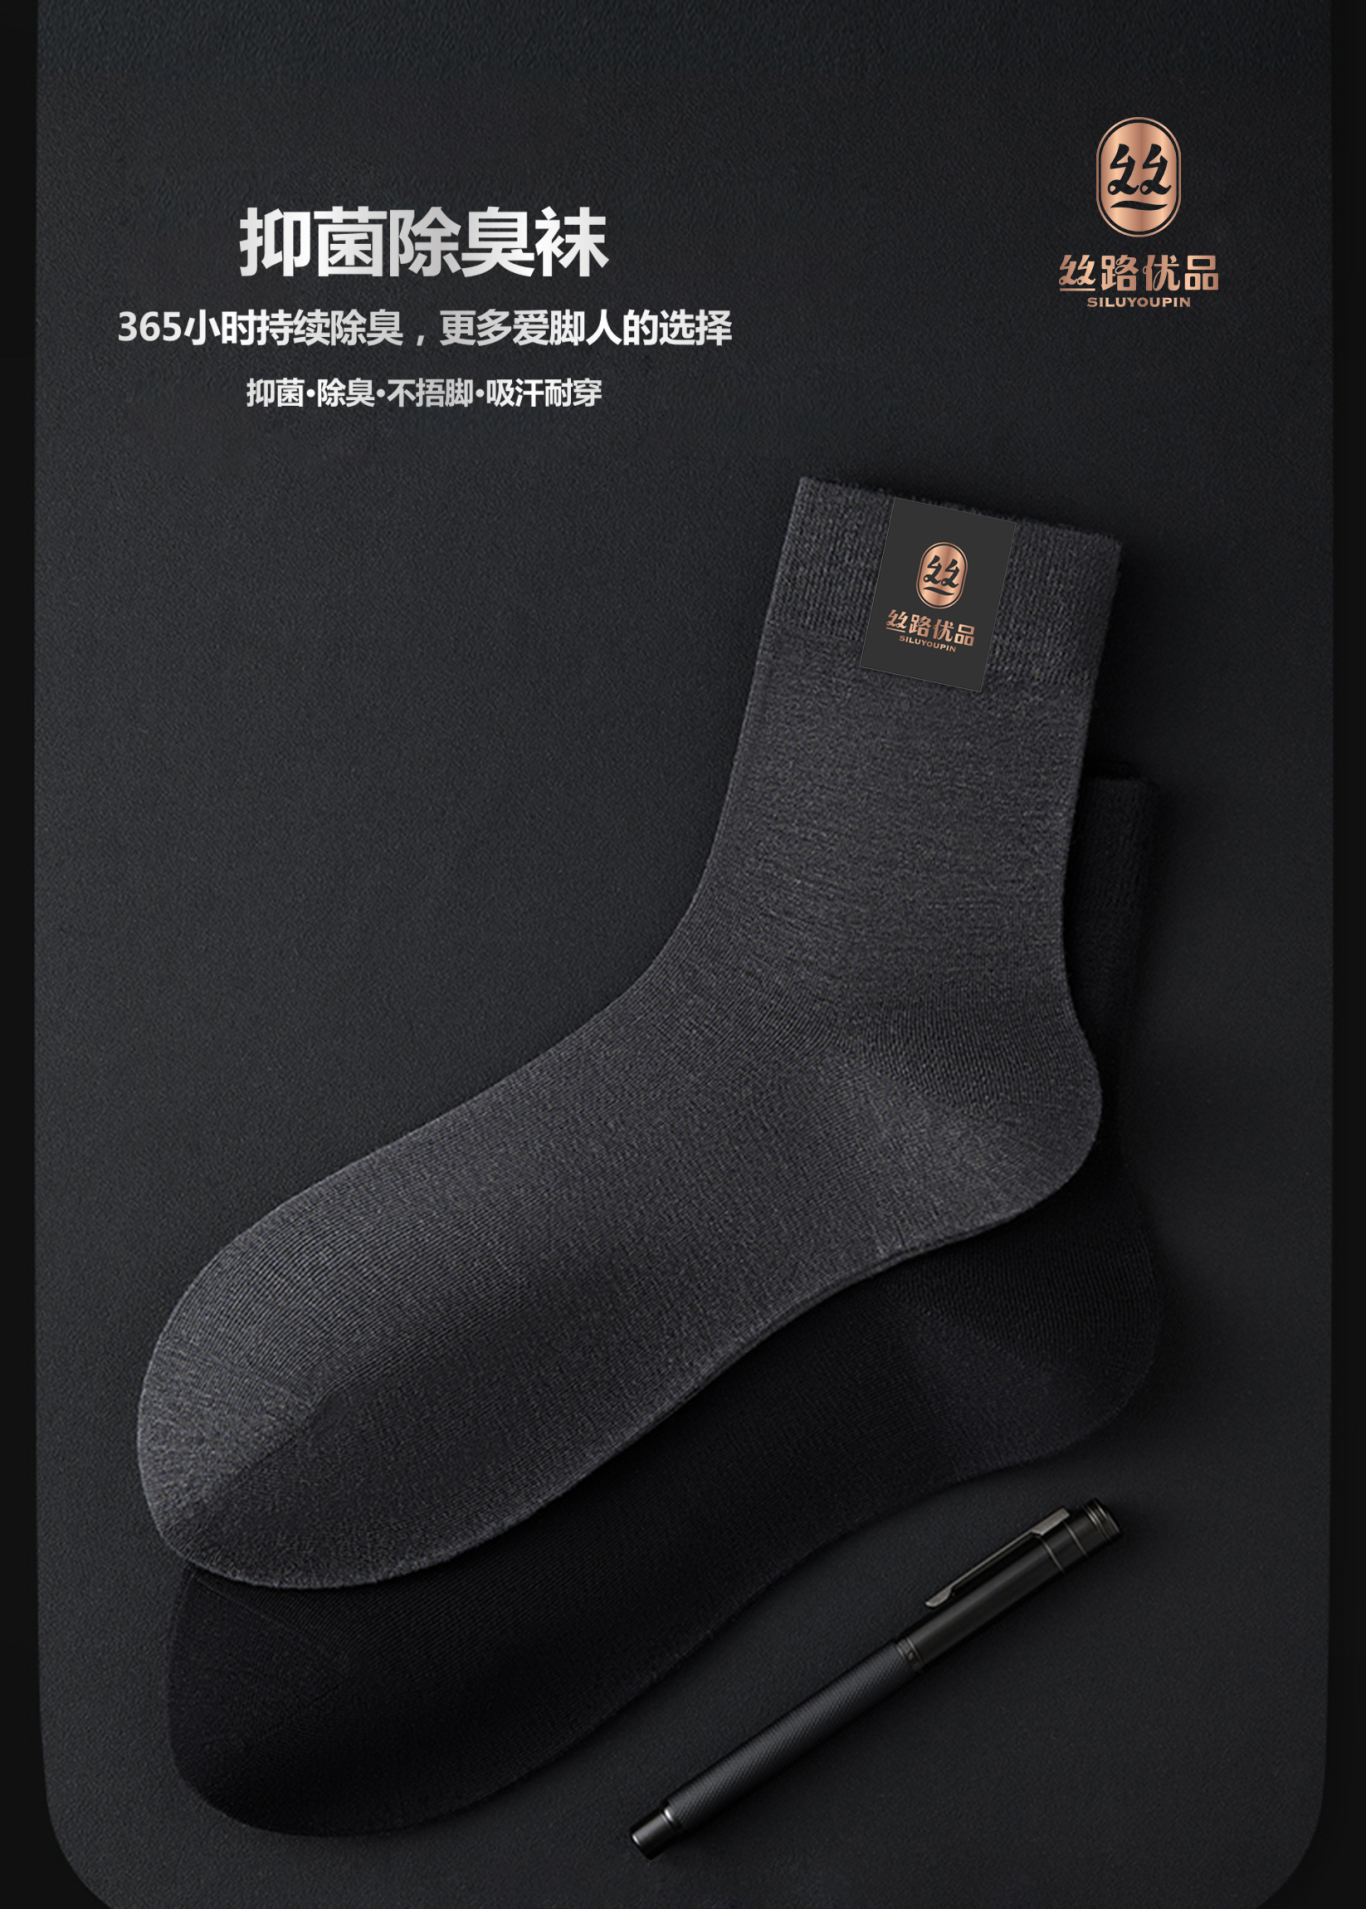 絲路優品襪子包裝設計圖5